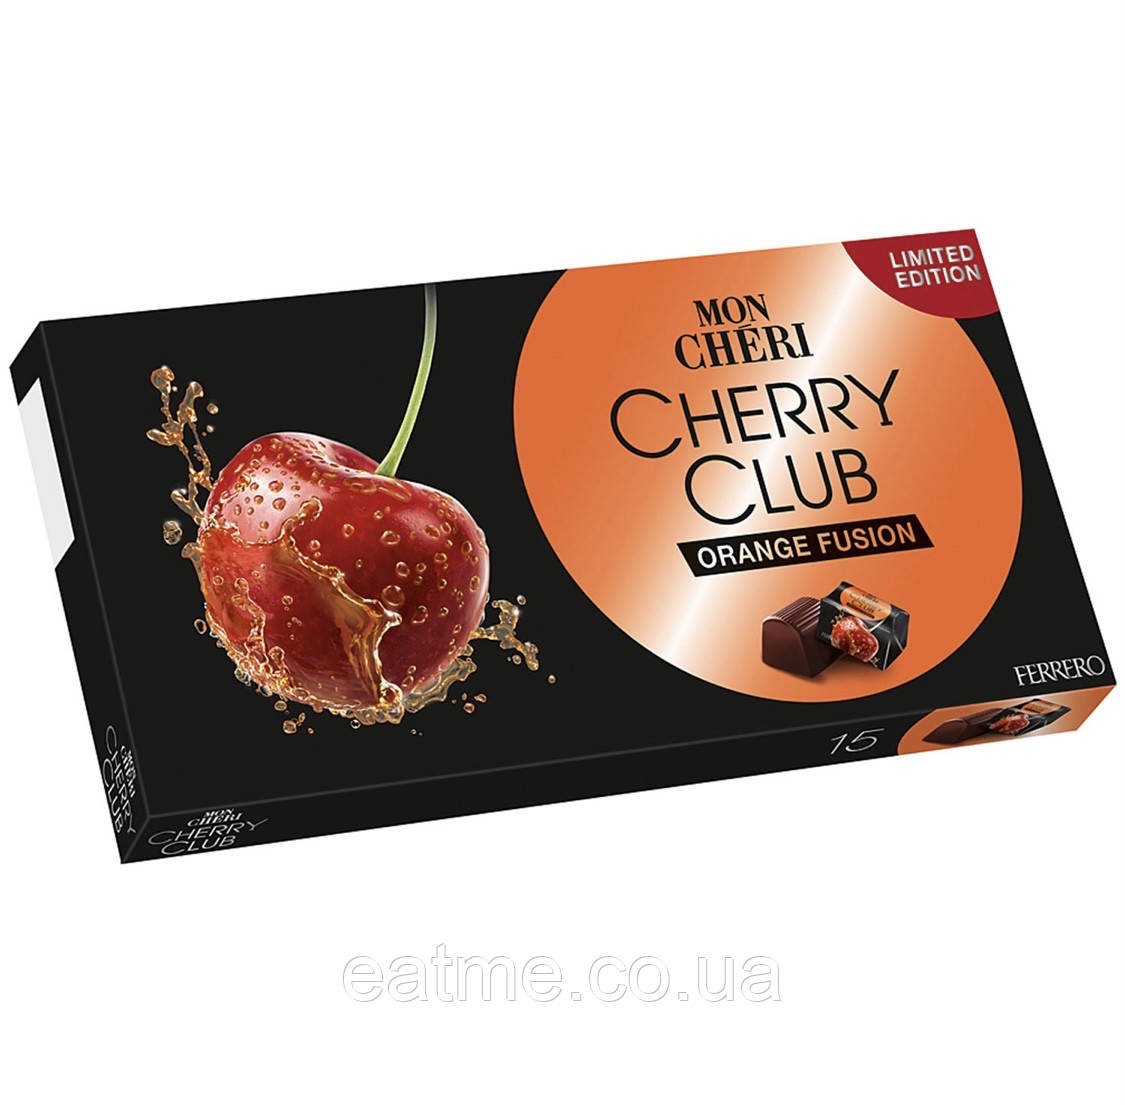 Mon Cheri Cherry Club Цукерки з чорного шоколаду всередині з суцільною вишнею й апельсиновим лікером 157g